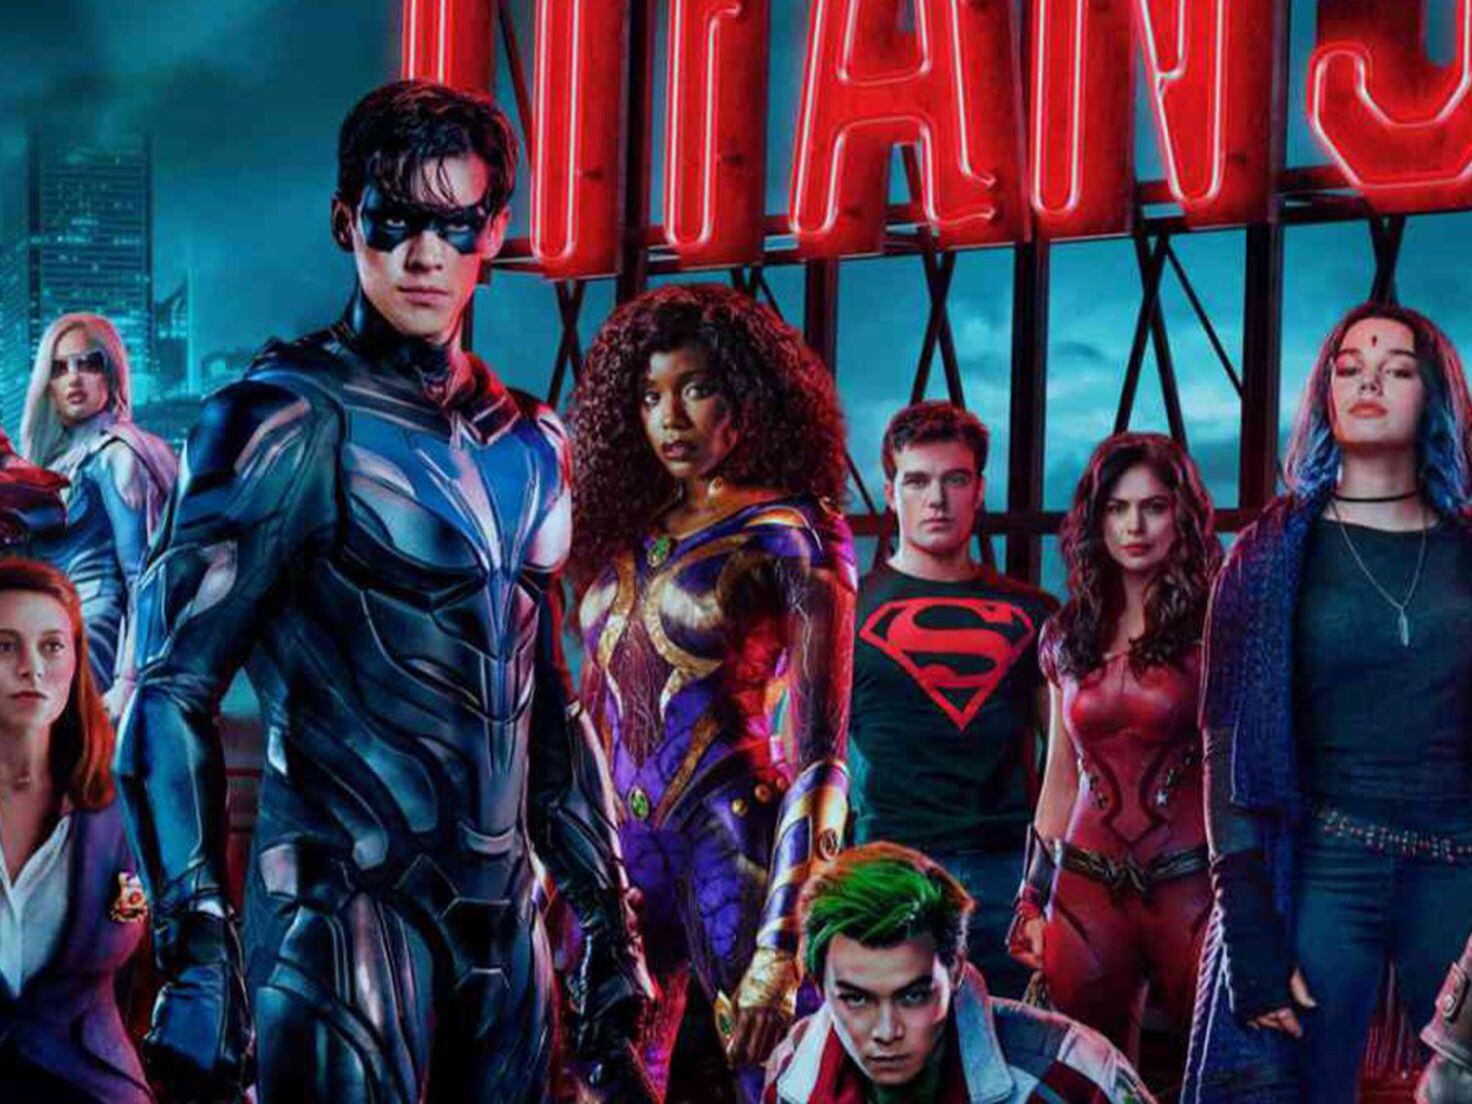 Está Titans Temporada 3 en Netflix? ¿Dónde ver online Titans Temporada 3?, Cine y series